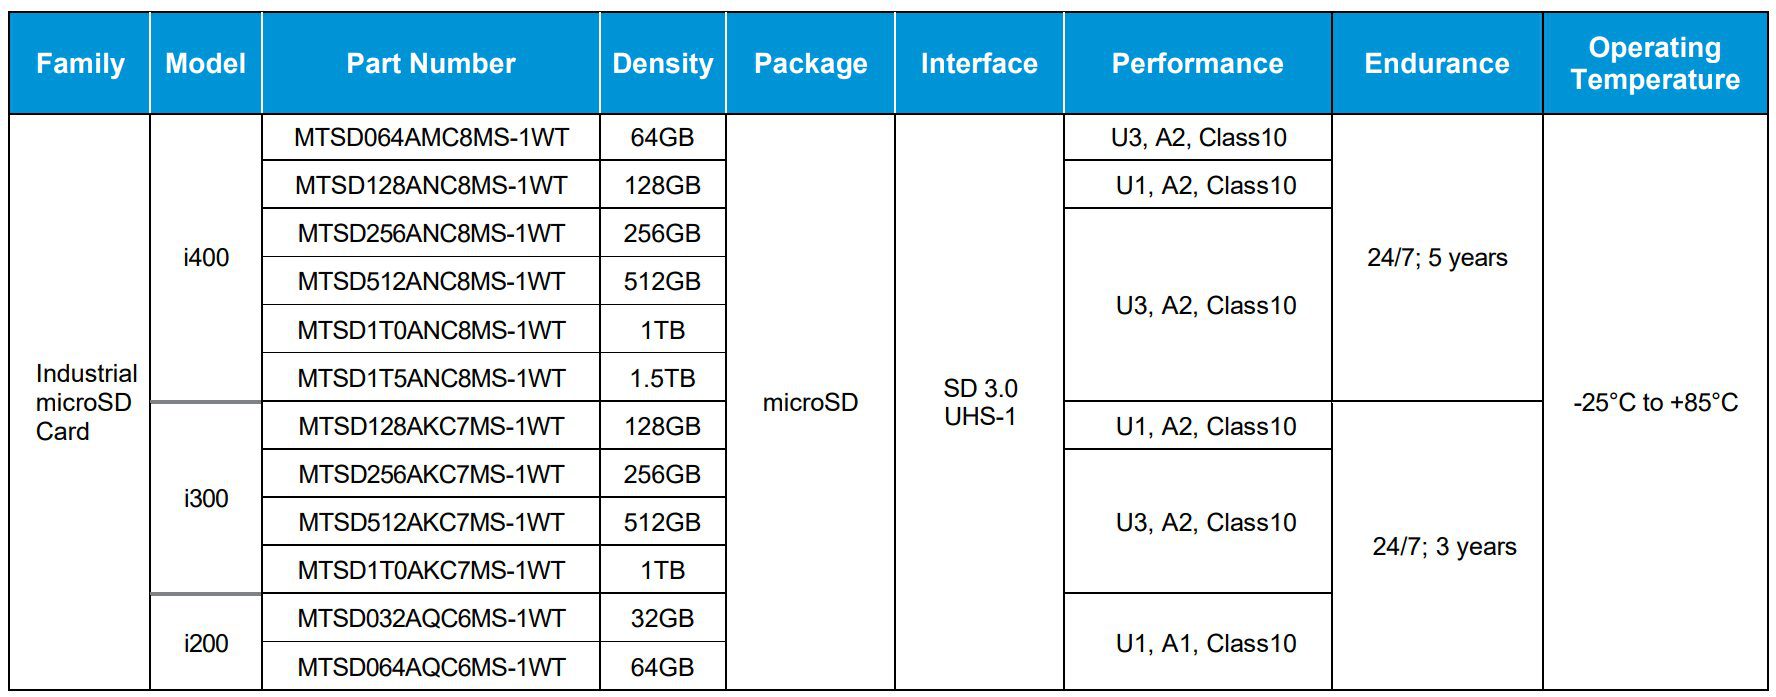 Basic data for i400 microSD memory cards